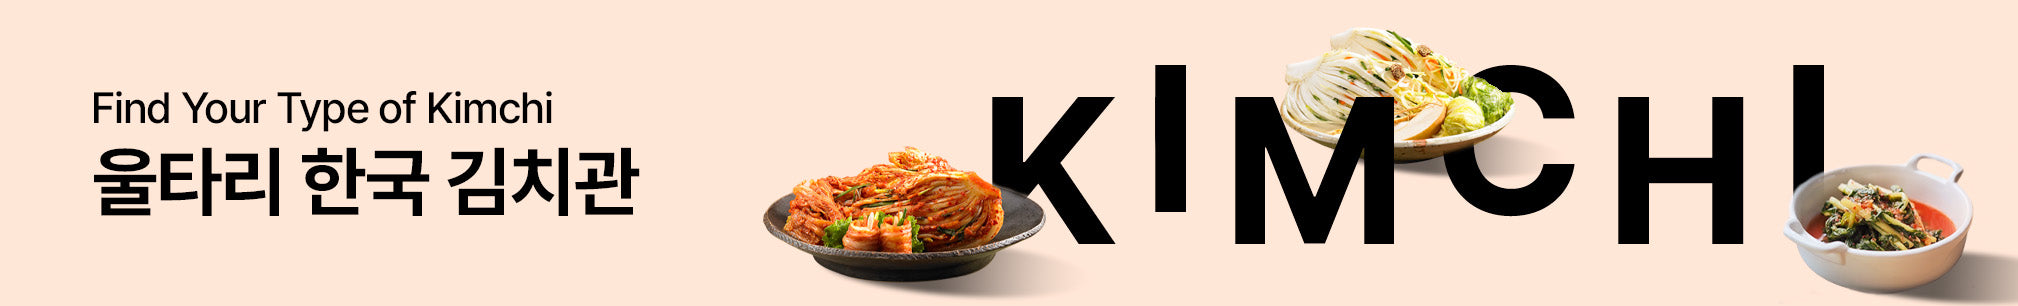 내 입맛에 맞는 가장 맛있는 김치, 울타리 한국김치관